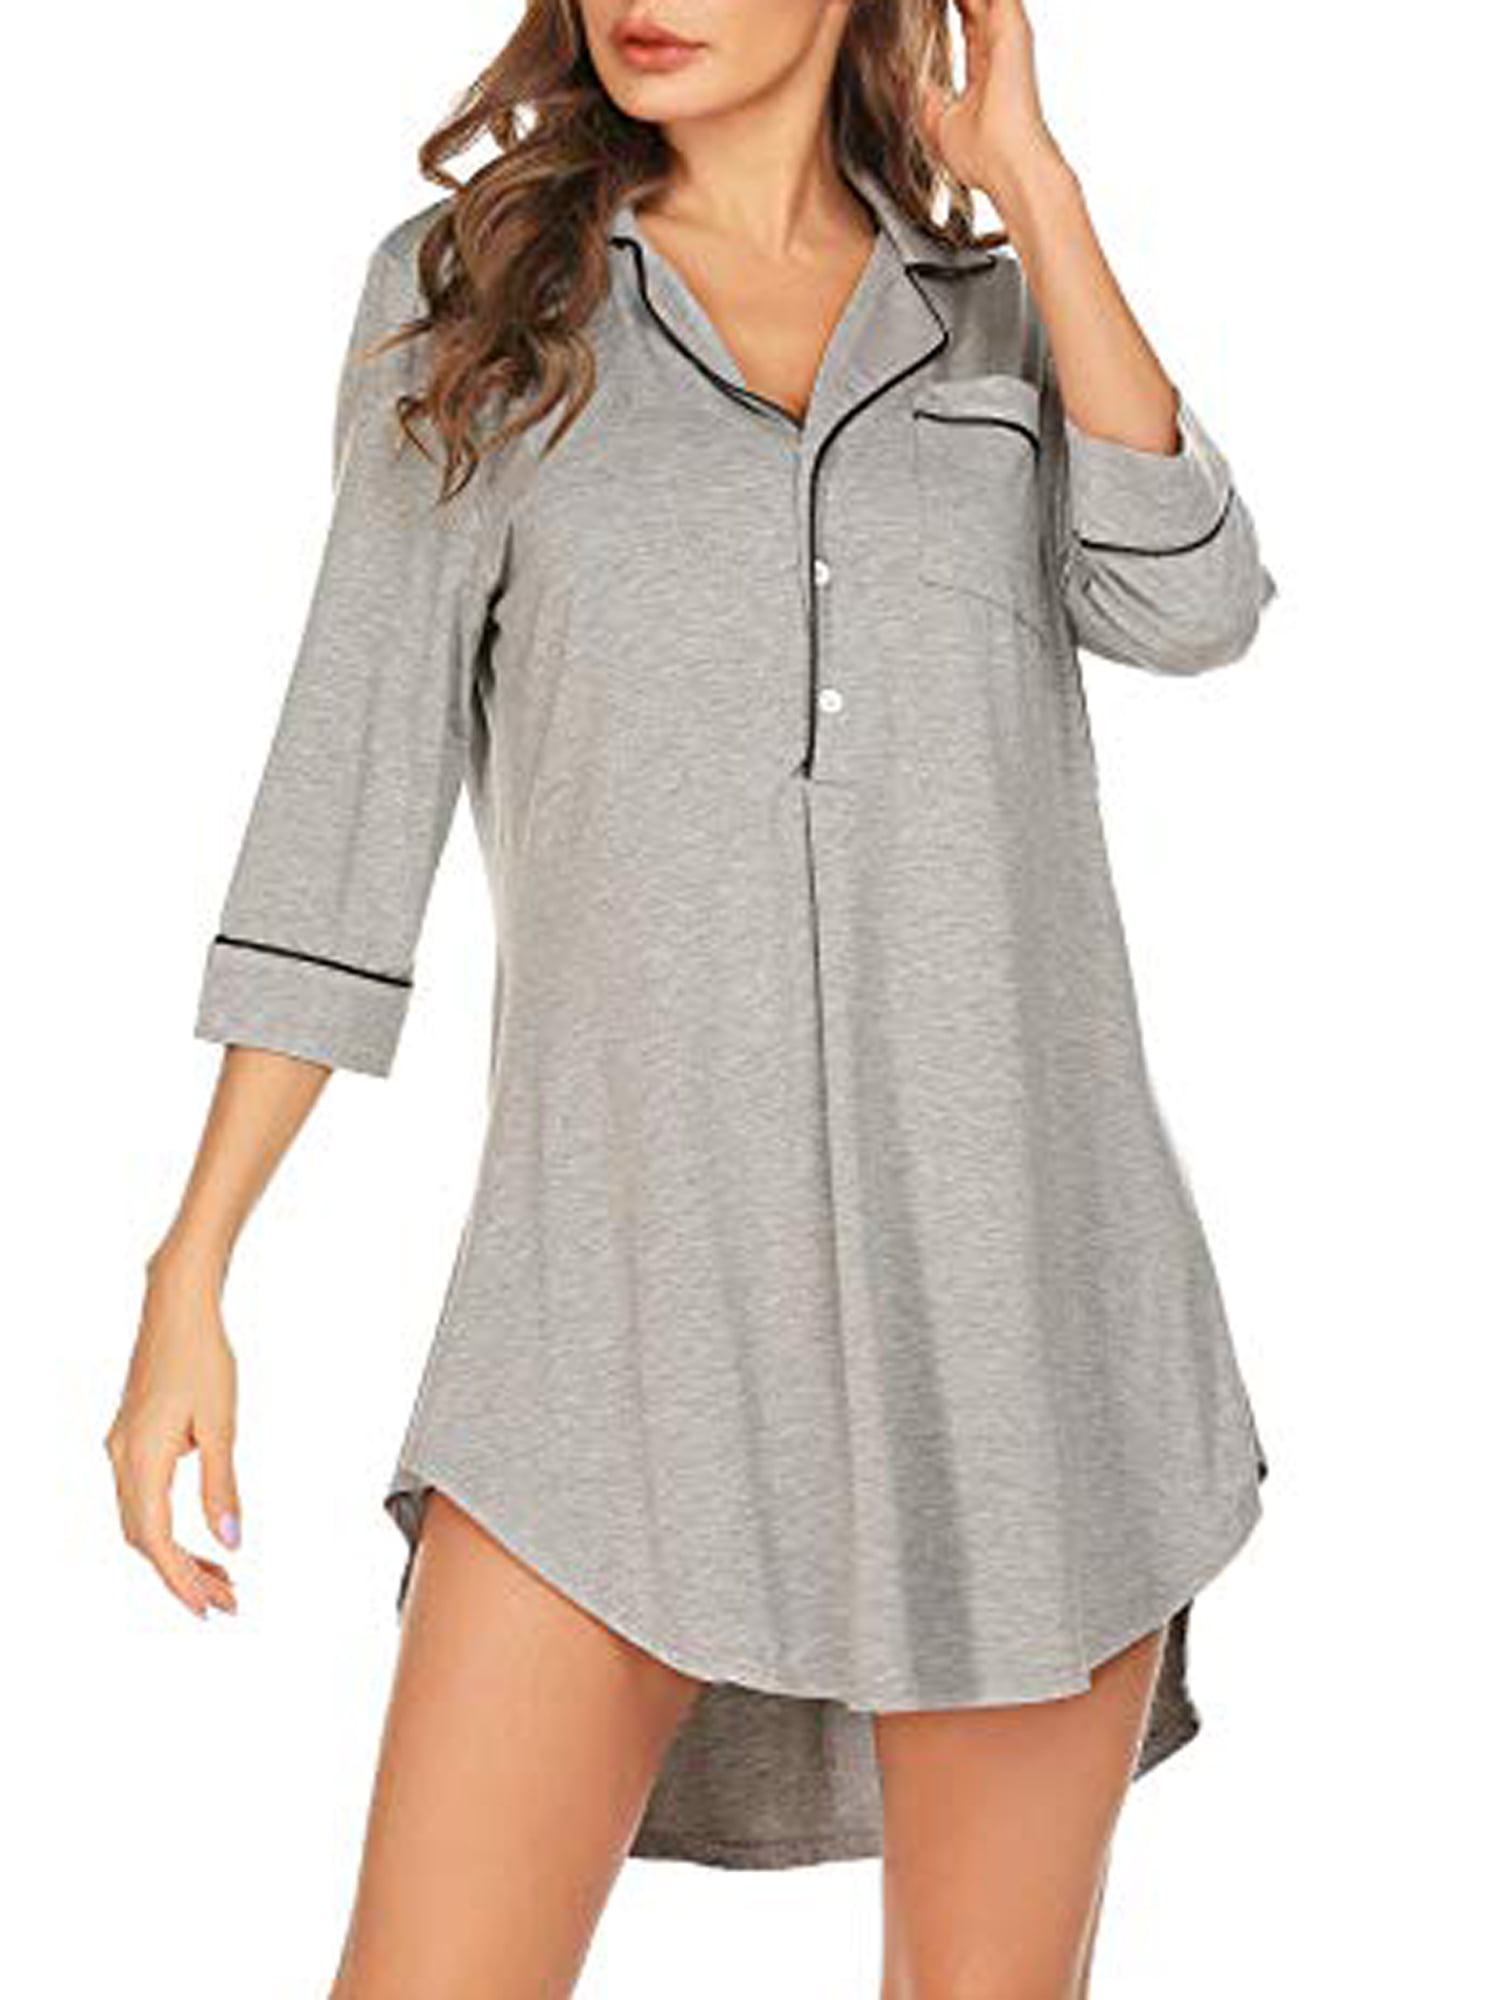 Women Nightshirt Long Sleeve Cotton Sleep Shirt Button Down Nightie Sleepwear M-XXL